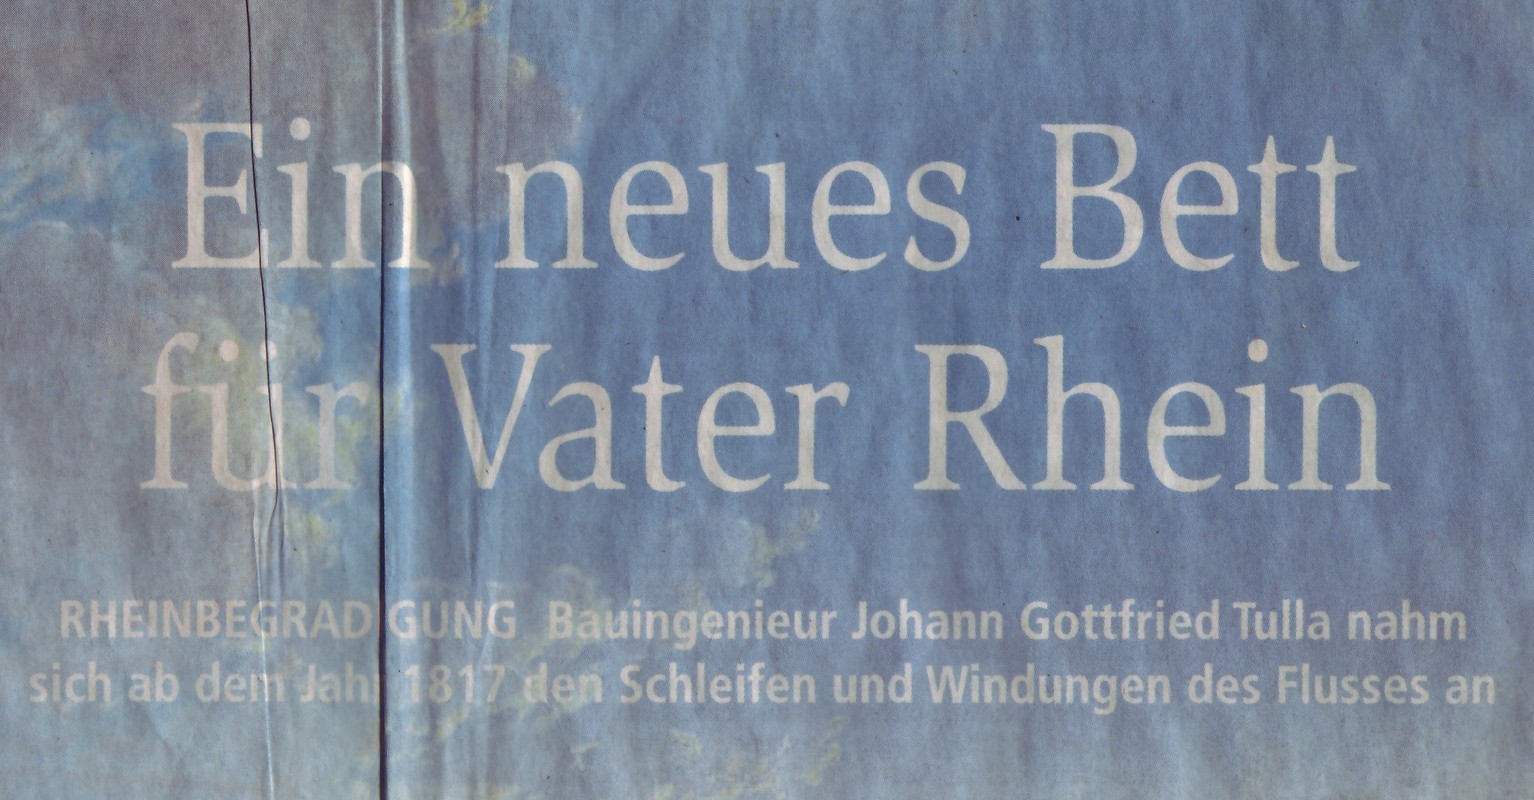 Ein neues Bett für Vater Rhein (Kulturverein Guntersblum CC BY-NC-SA)